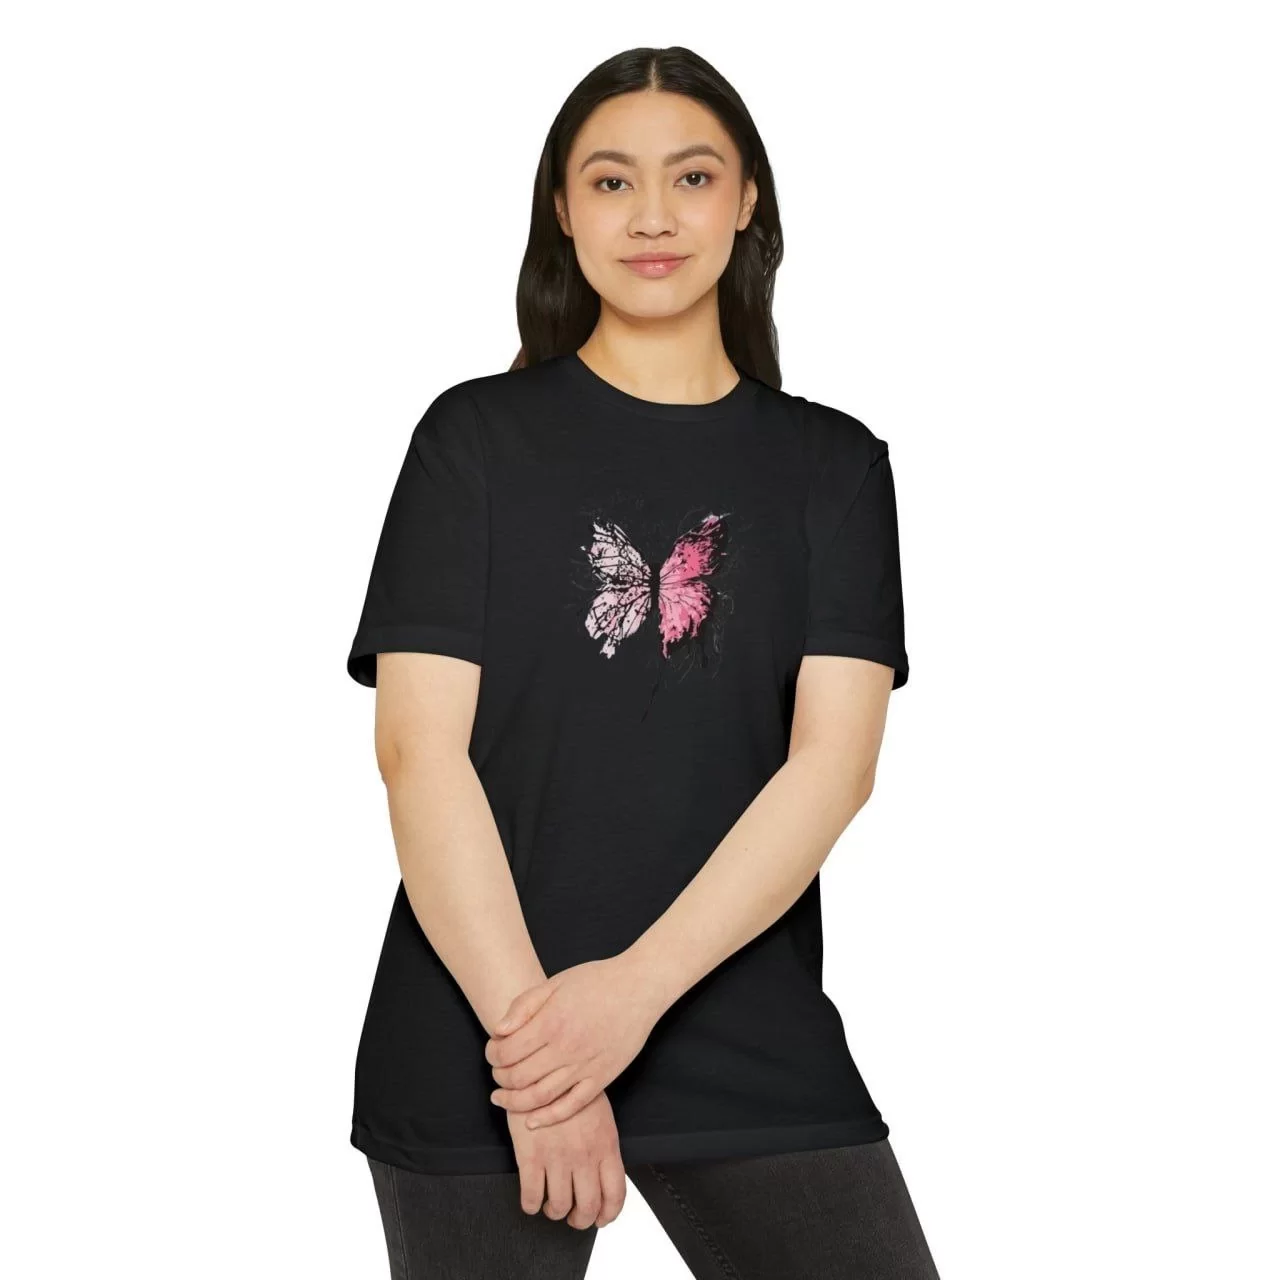 Unisex Kadın Bisiklet Yaka Baskılı T-Shirt - Siyah